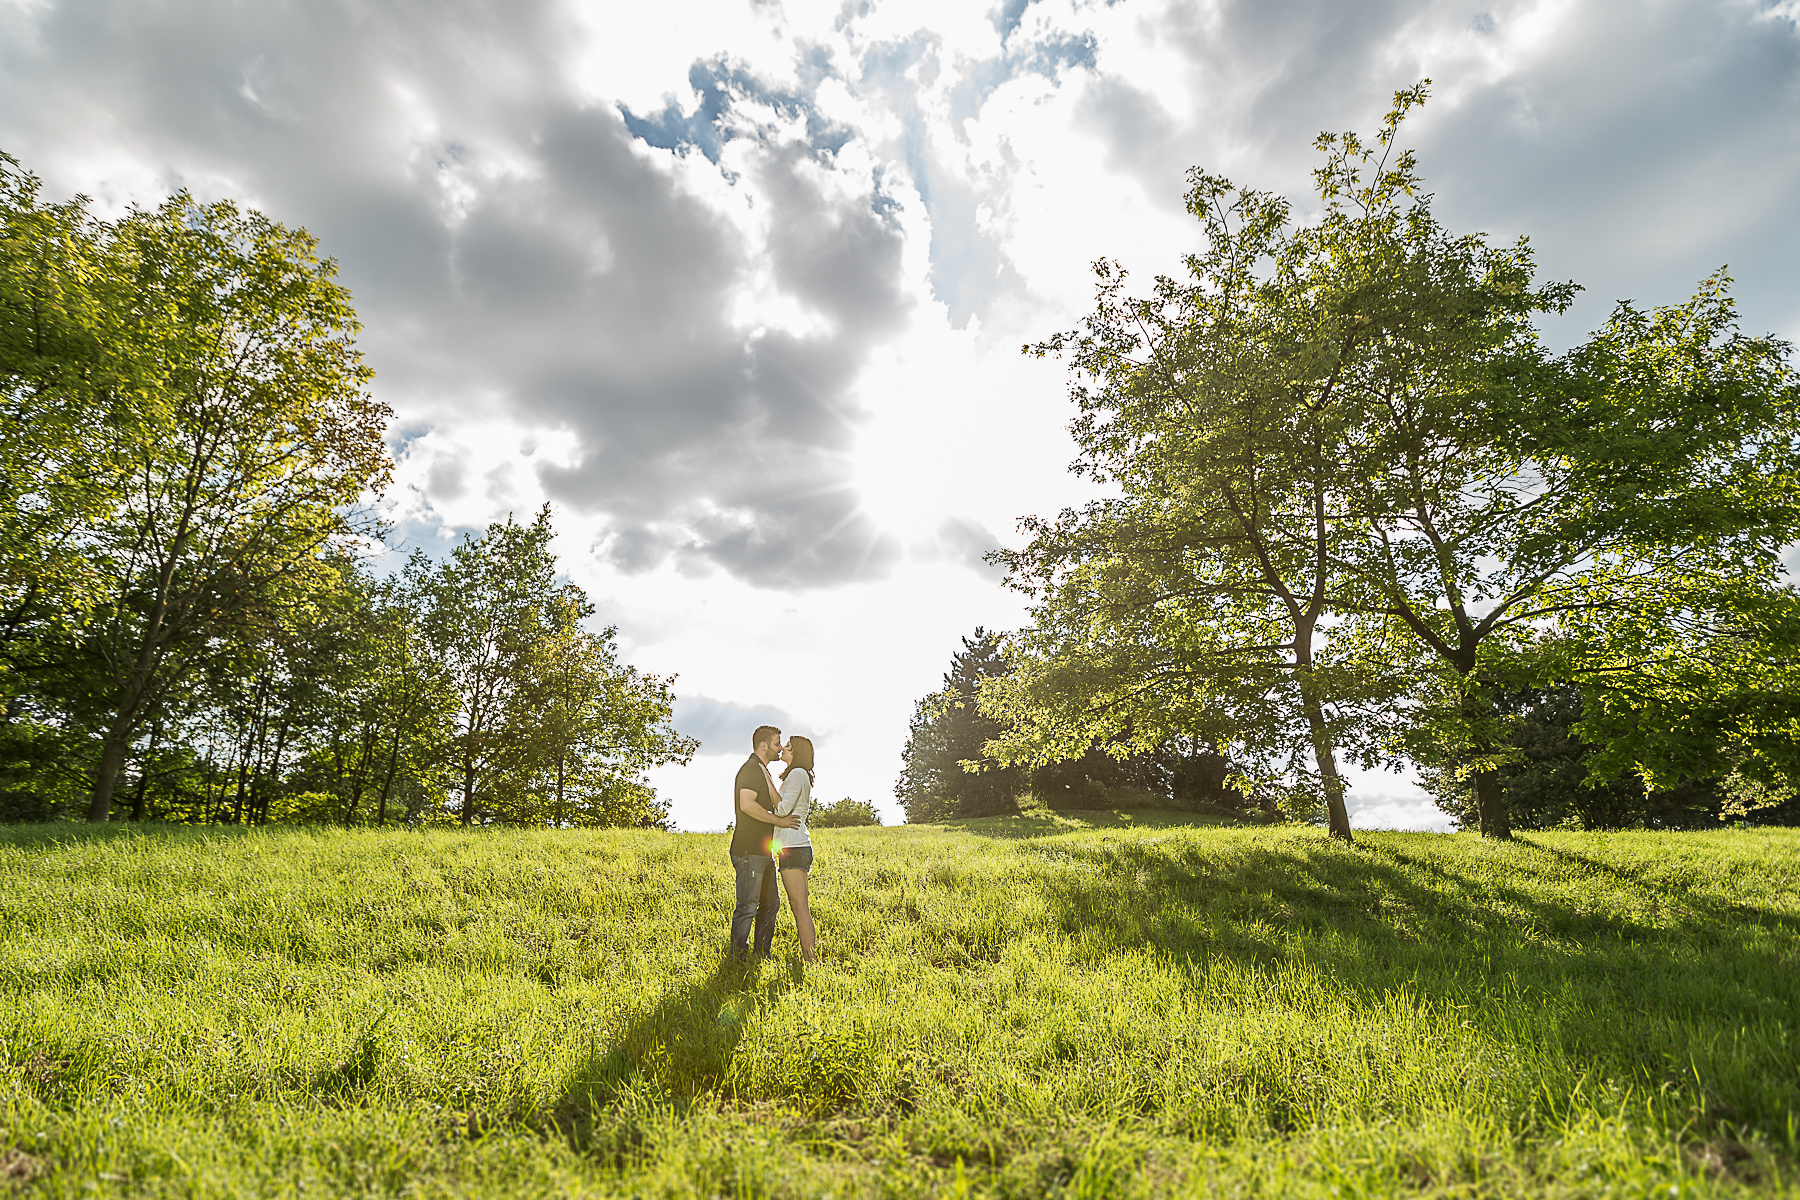 Ein junges Paar steht in einem hügligen Feld und küsst sich. Beidseitig sind Bäume, im Himmel sehr bewölkt und die Sonne scheint durch die Wolken hindurch.